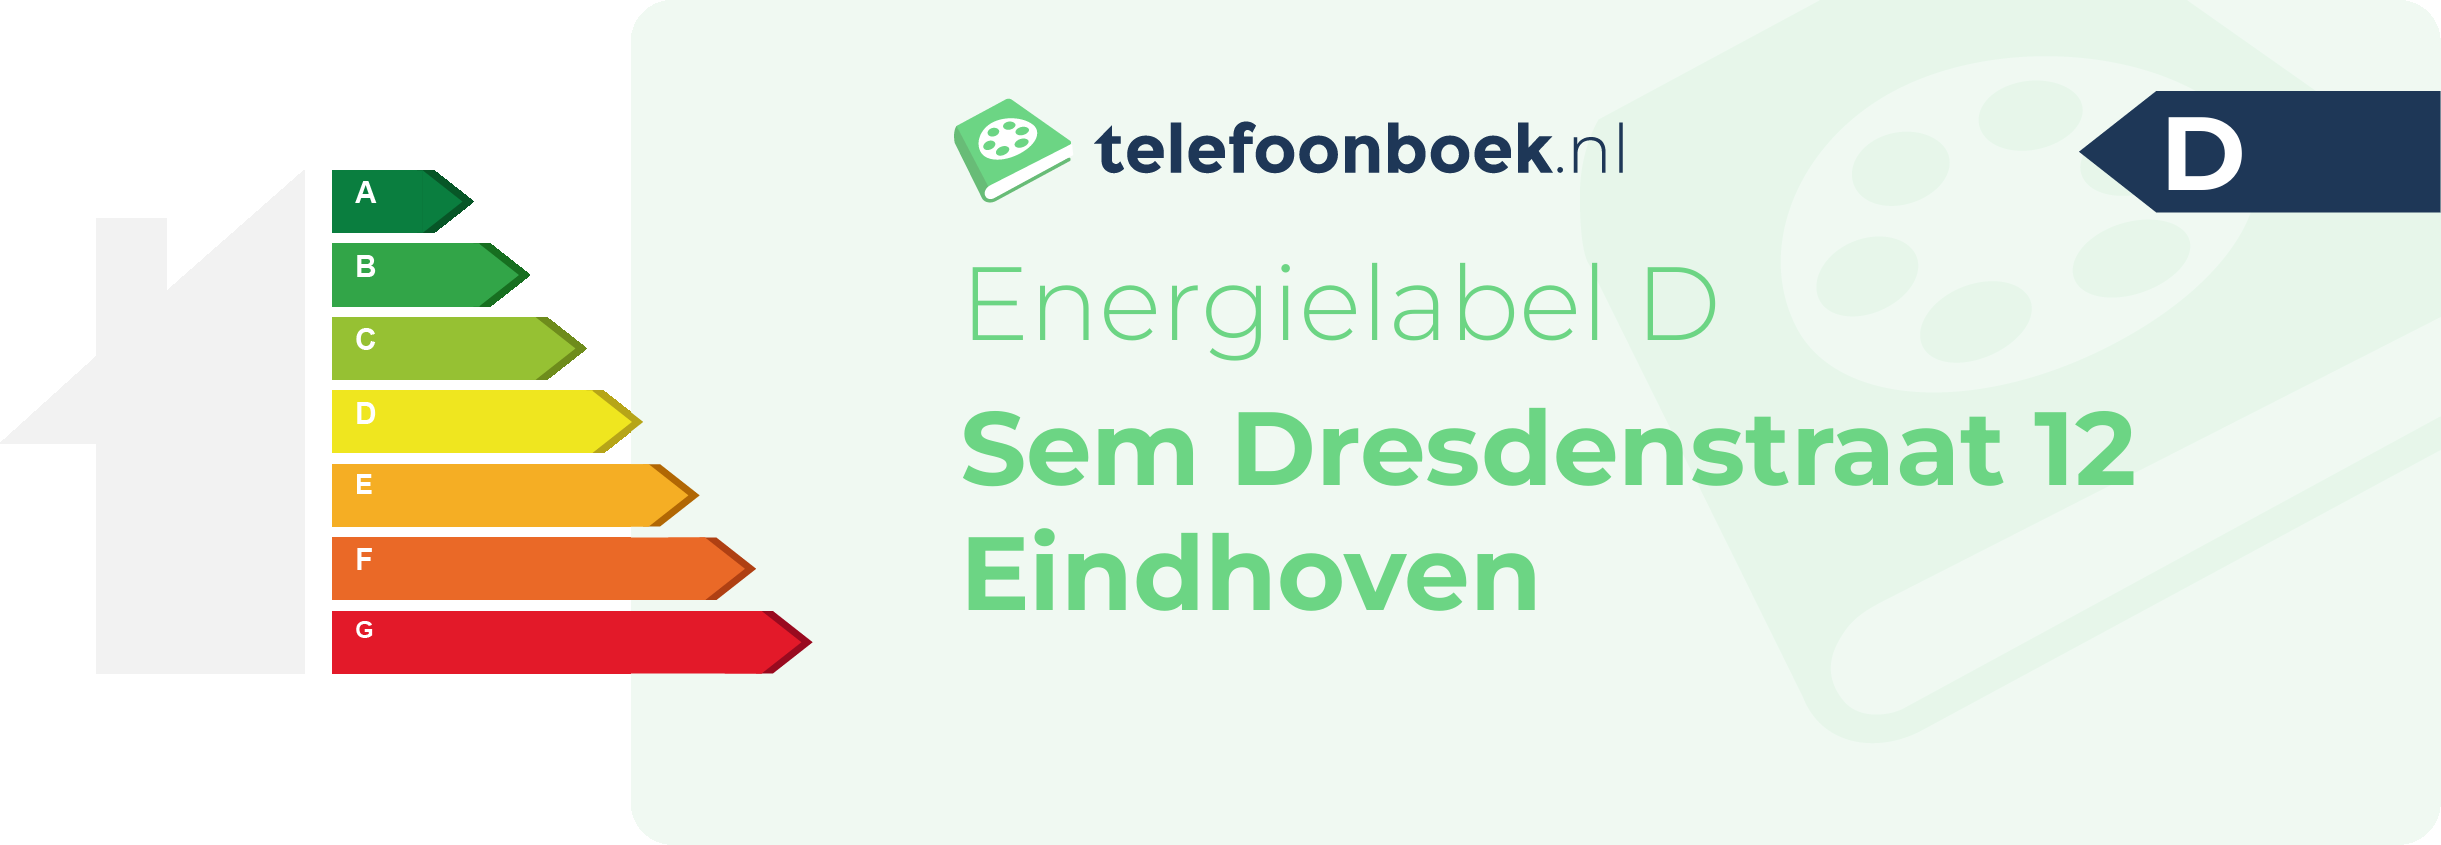 Energielabel Sem Dresdenstraat 12 Eindhoven